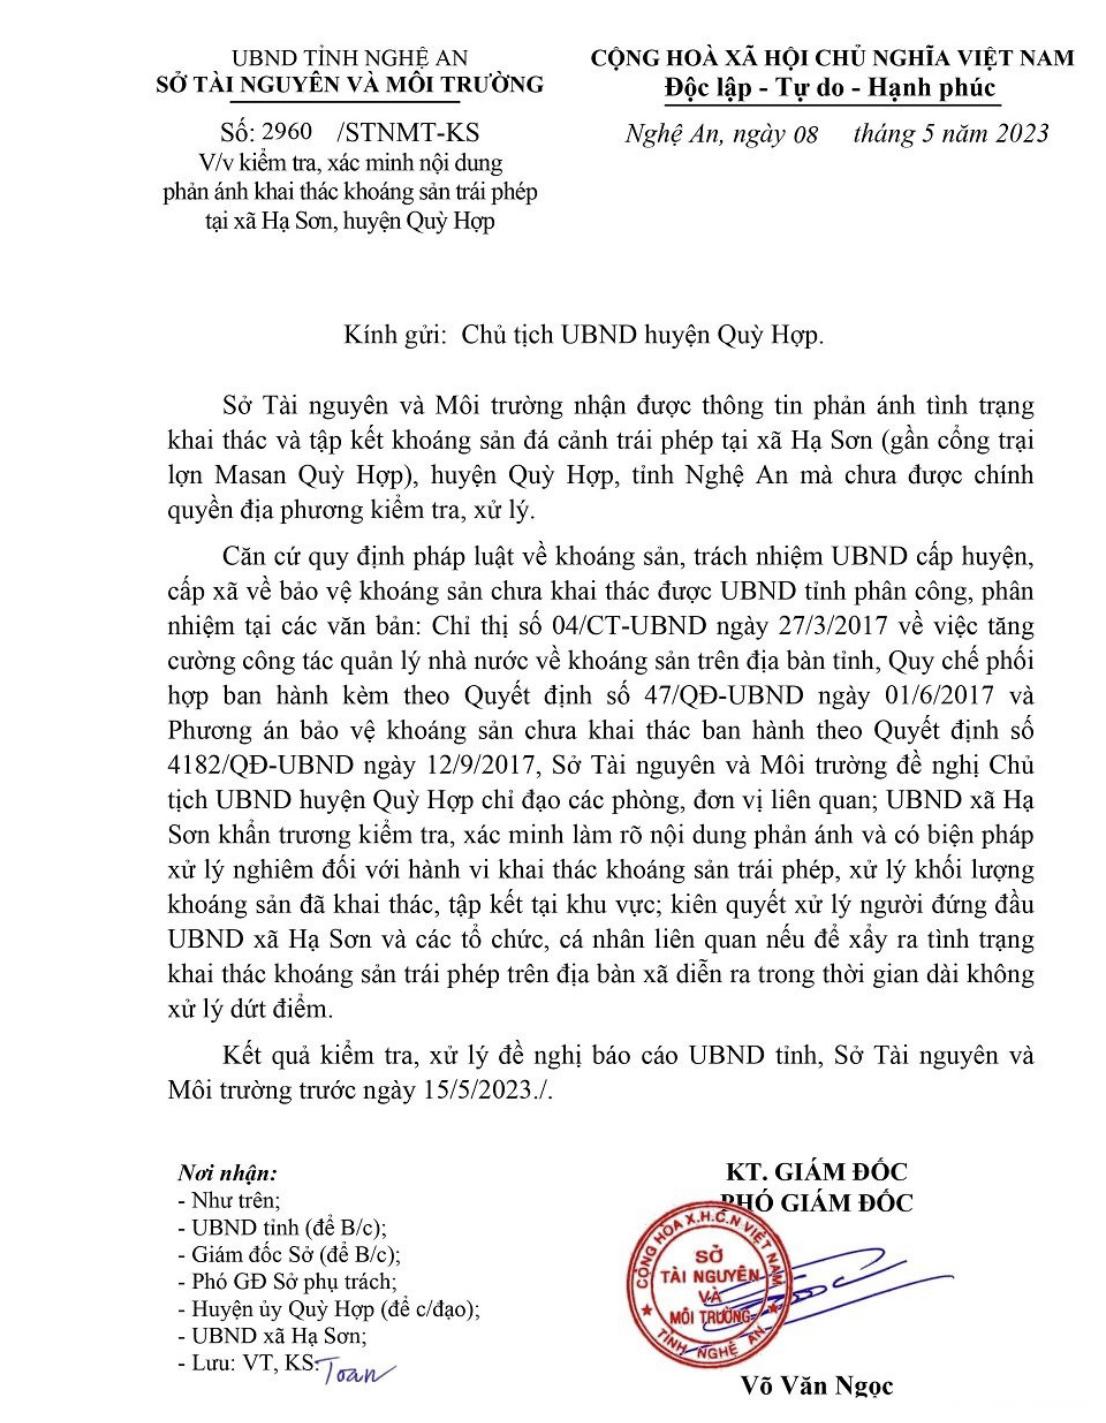 Sau khi được thông tin về vụ việc, Sở TN&MT đã có văn bản gửi Chủ tịch UBND huyện Quỳ Hợp để vào cuộc, xác minh và báo cáo UBND tỉnh